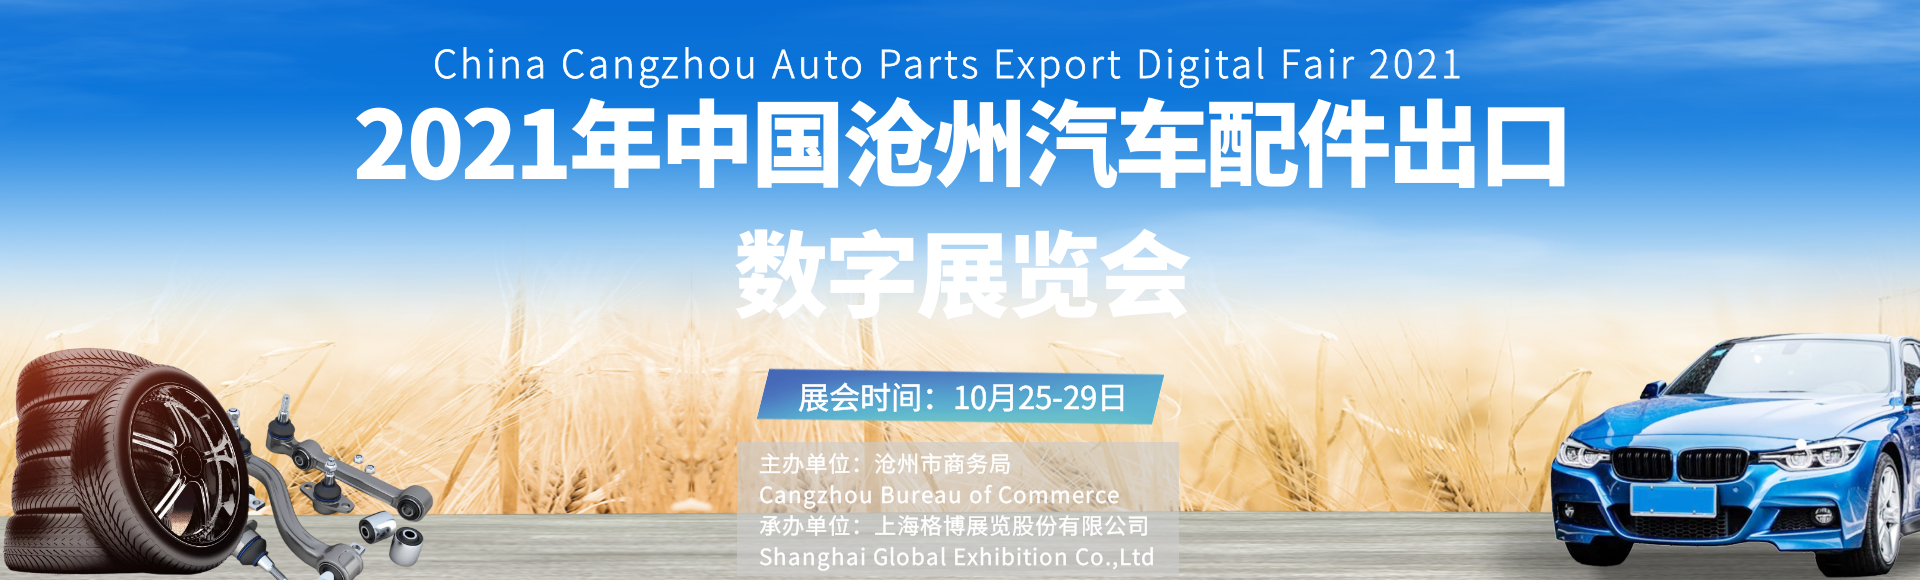 2021年中国沧州汽车配件出口数字<font color=#ff0000>展览会</font>即将启幕